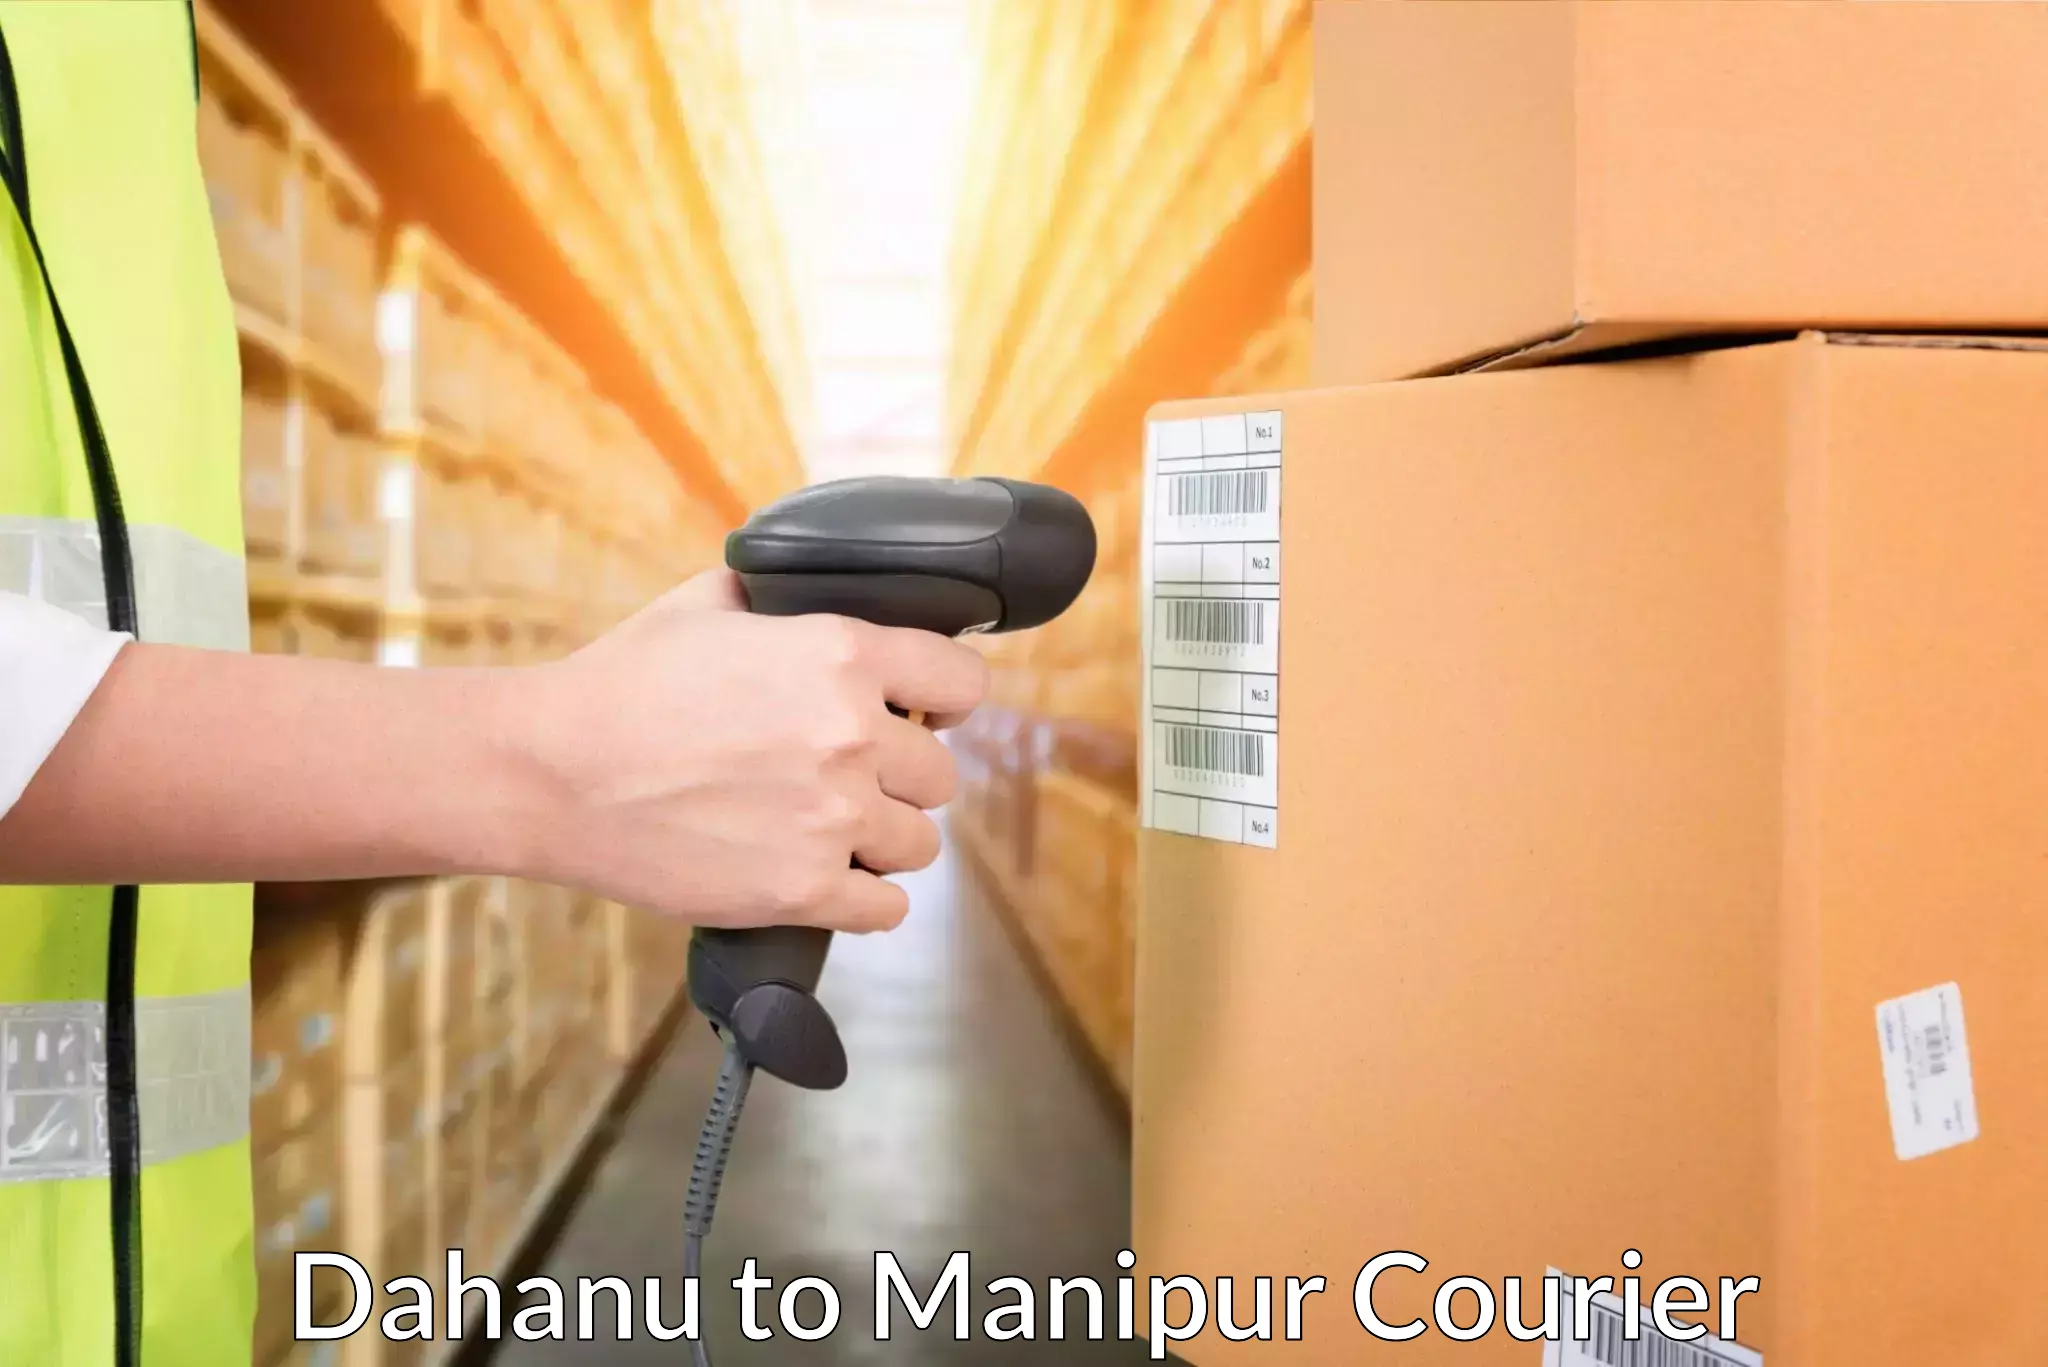 Courier service comparison Dahanu to Manipur